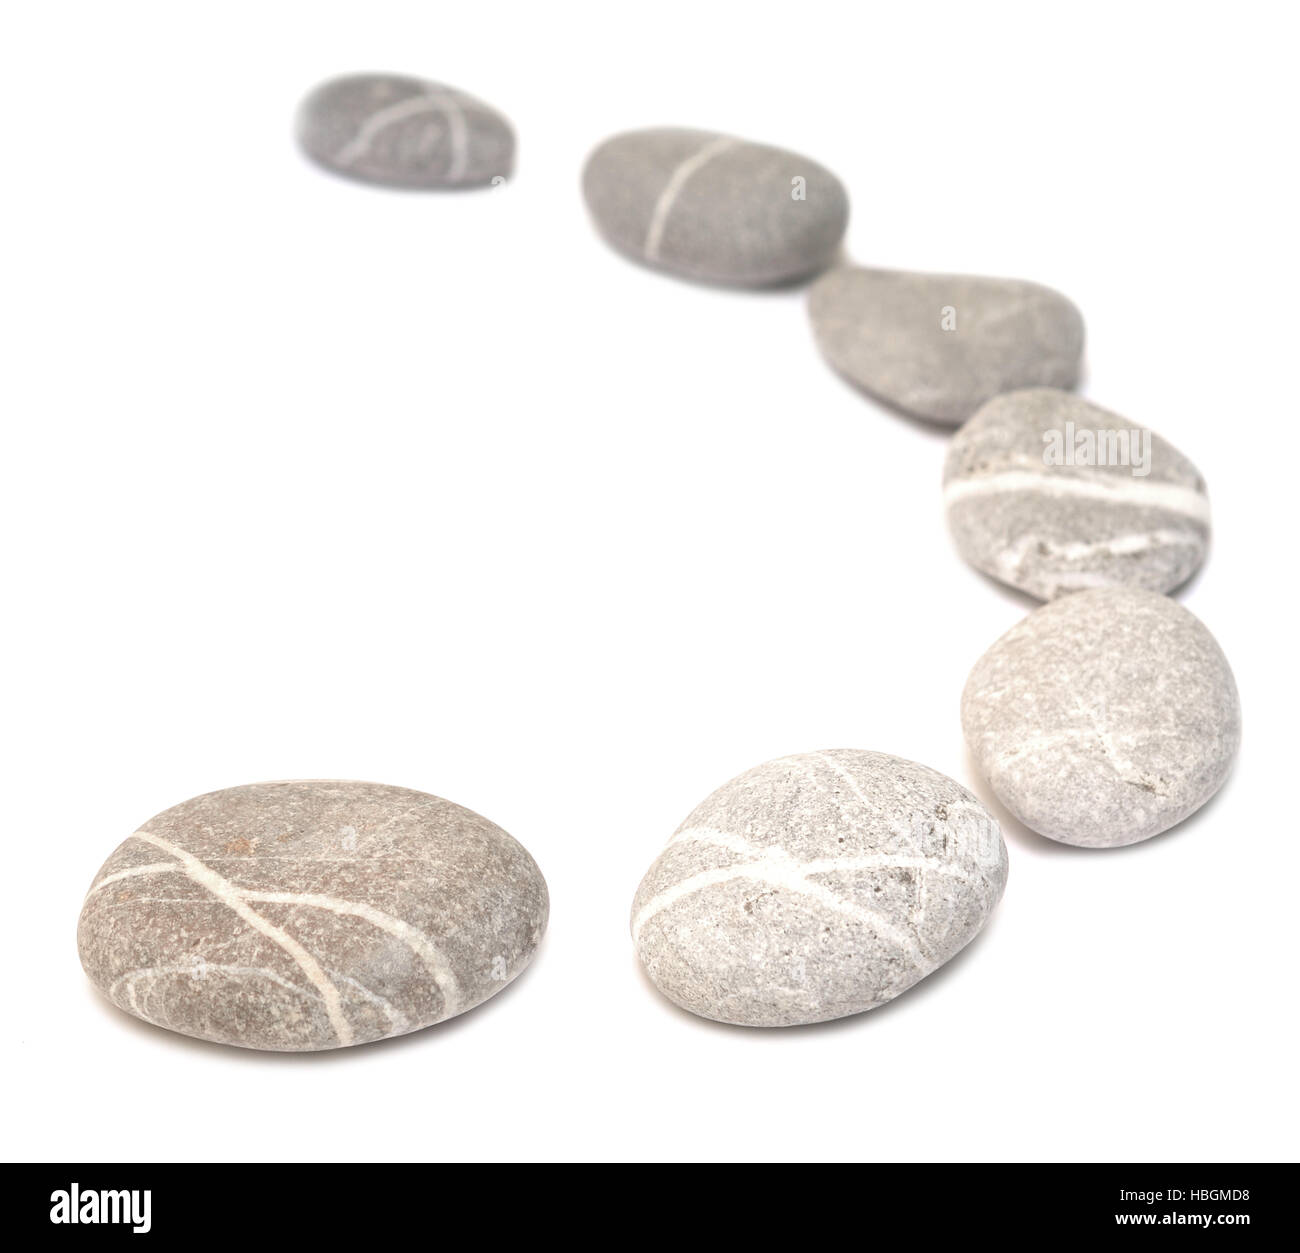 row of pebbles Stock Photo - Alamy